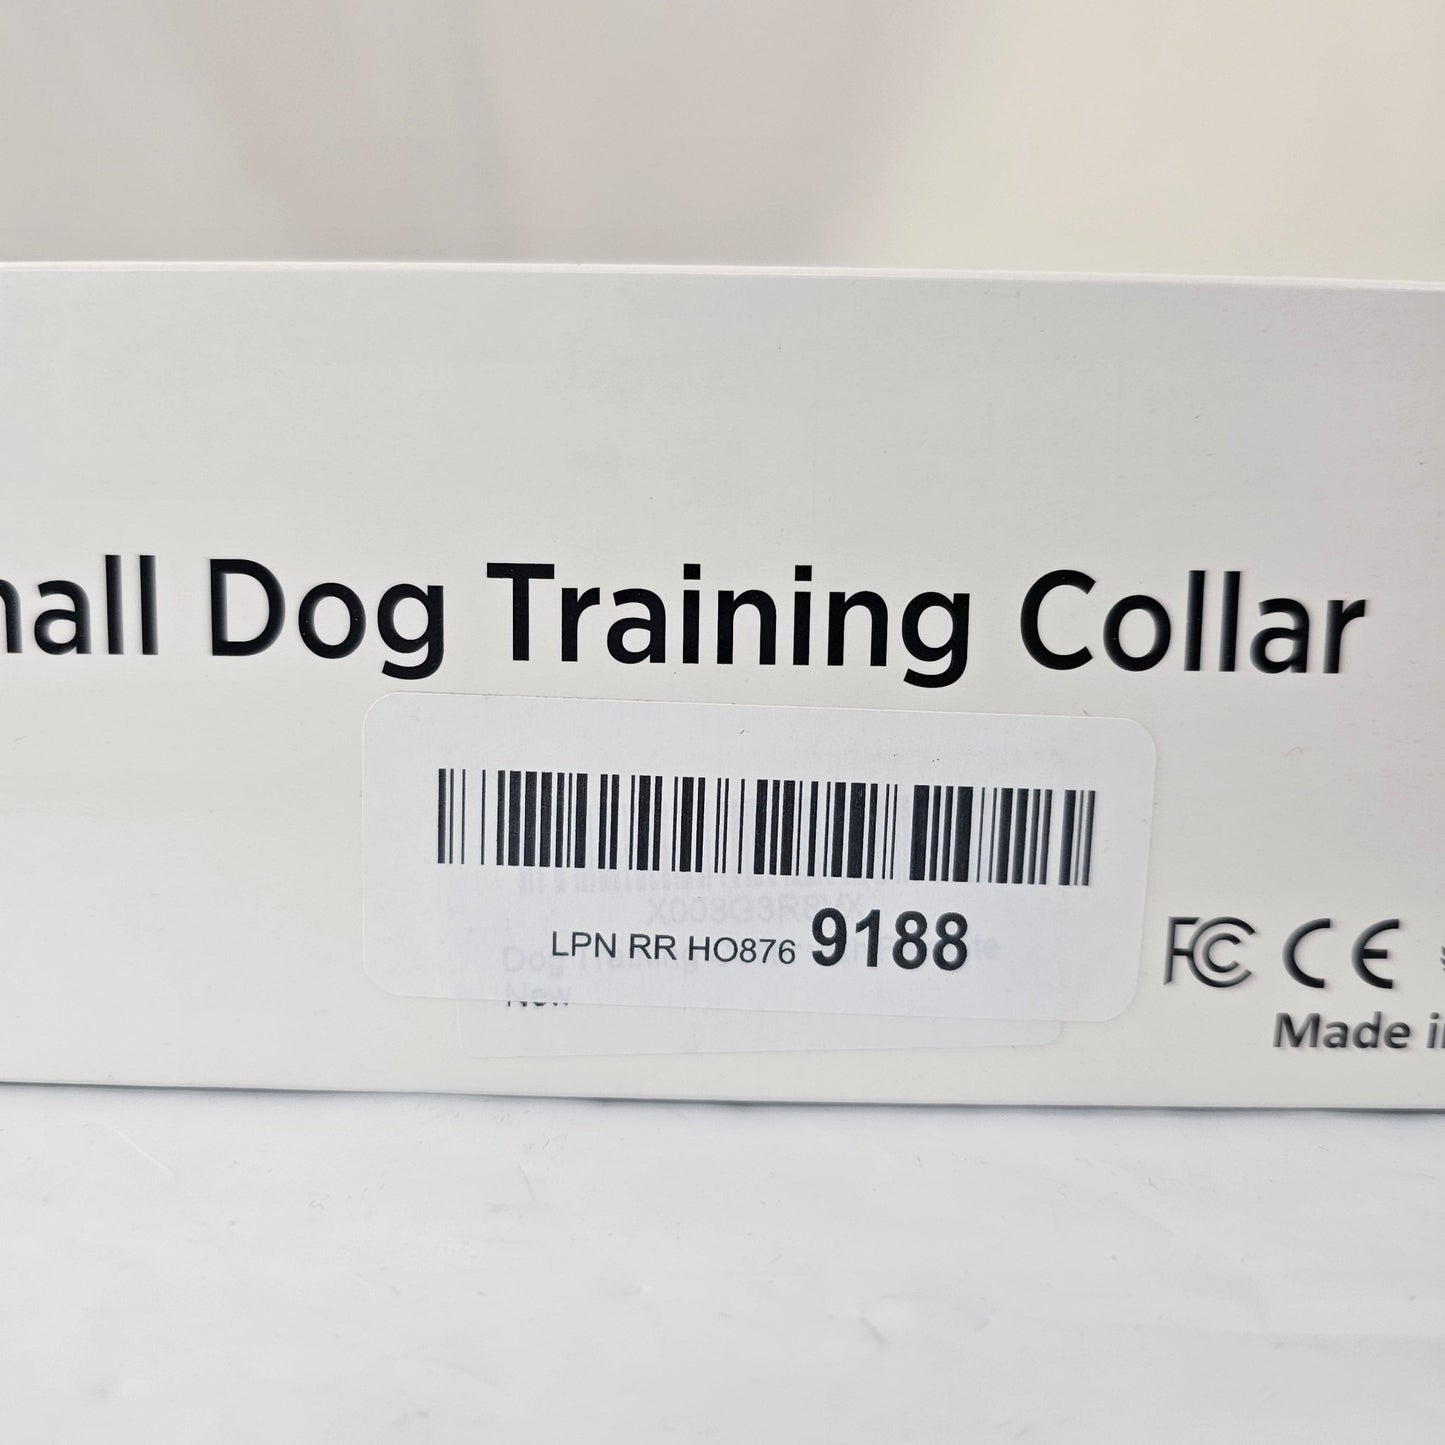 Small Dog Training Collar Enrivik - DQ Distribution